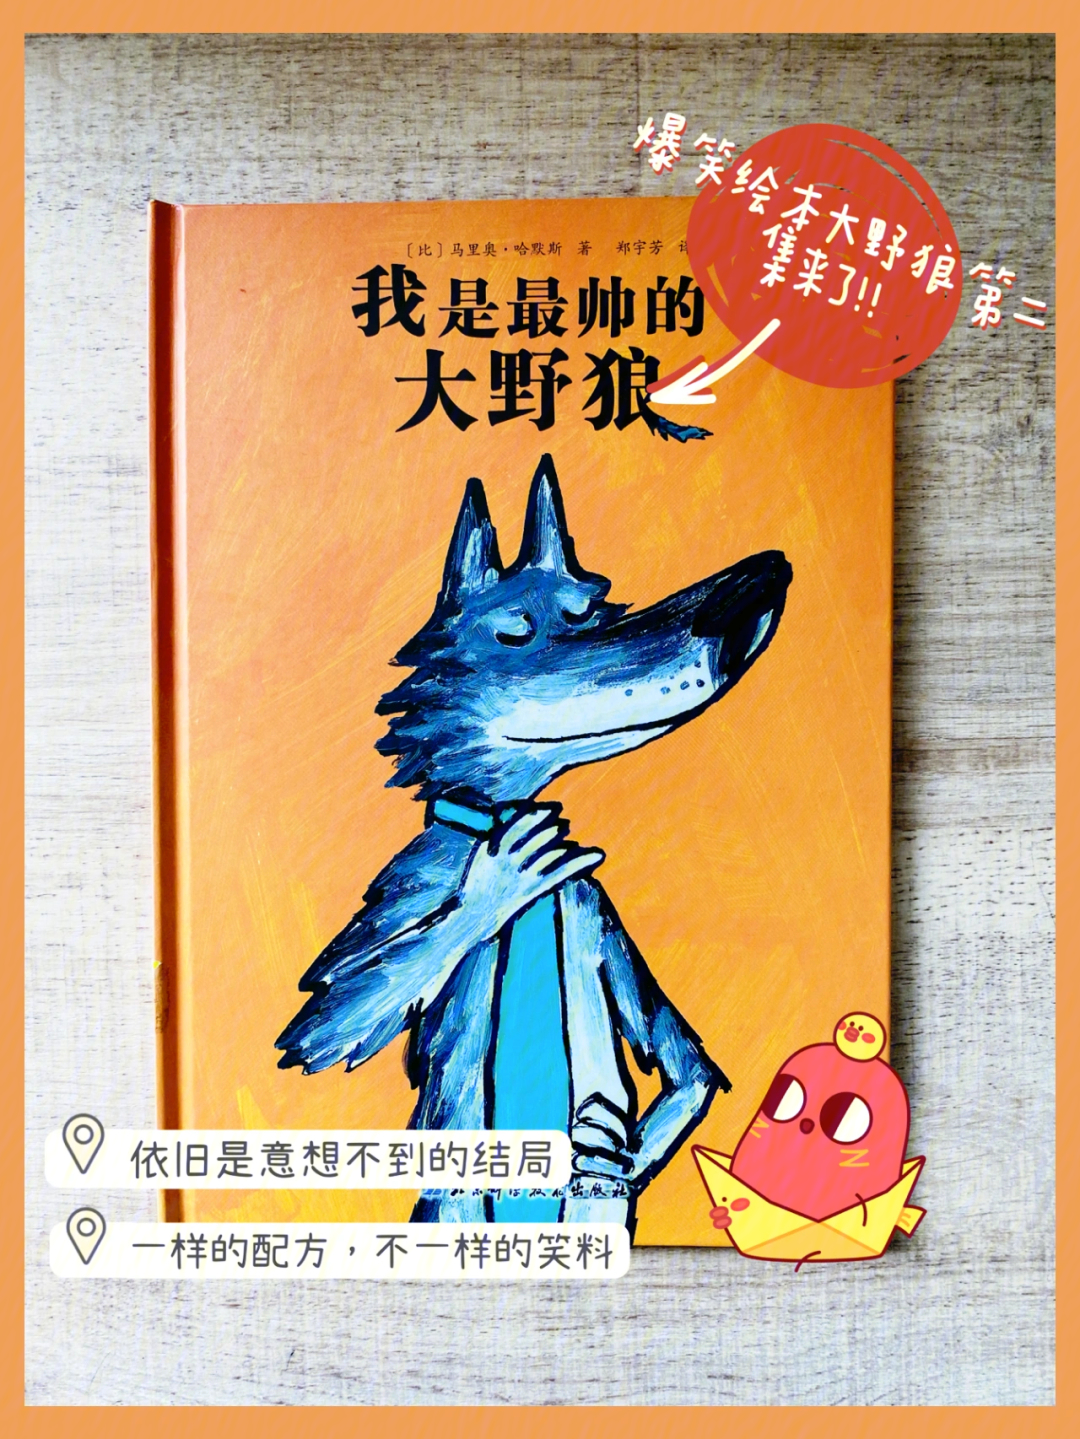 野狼》【作者】9790马里奥·哈默斯【98出版社】北京科学技术